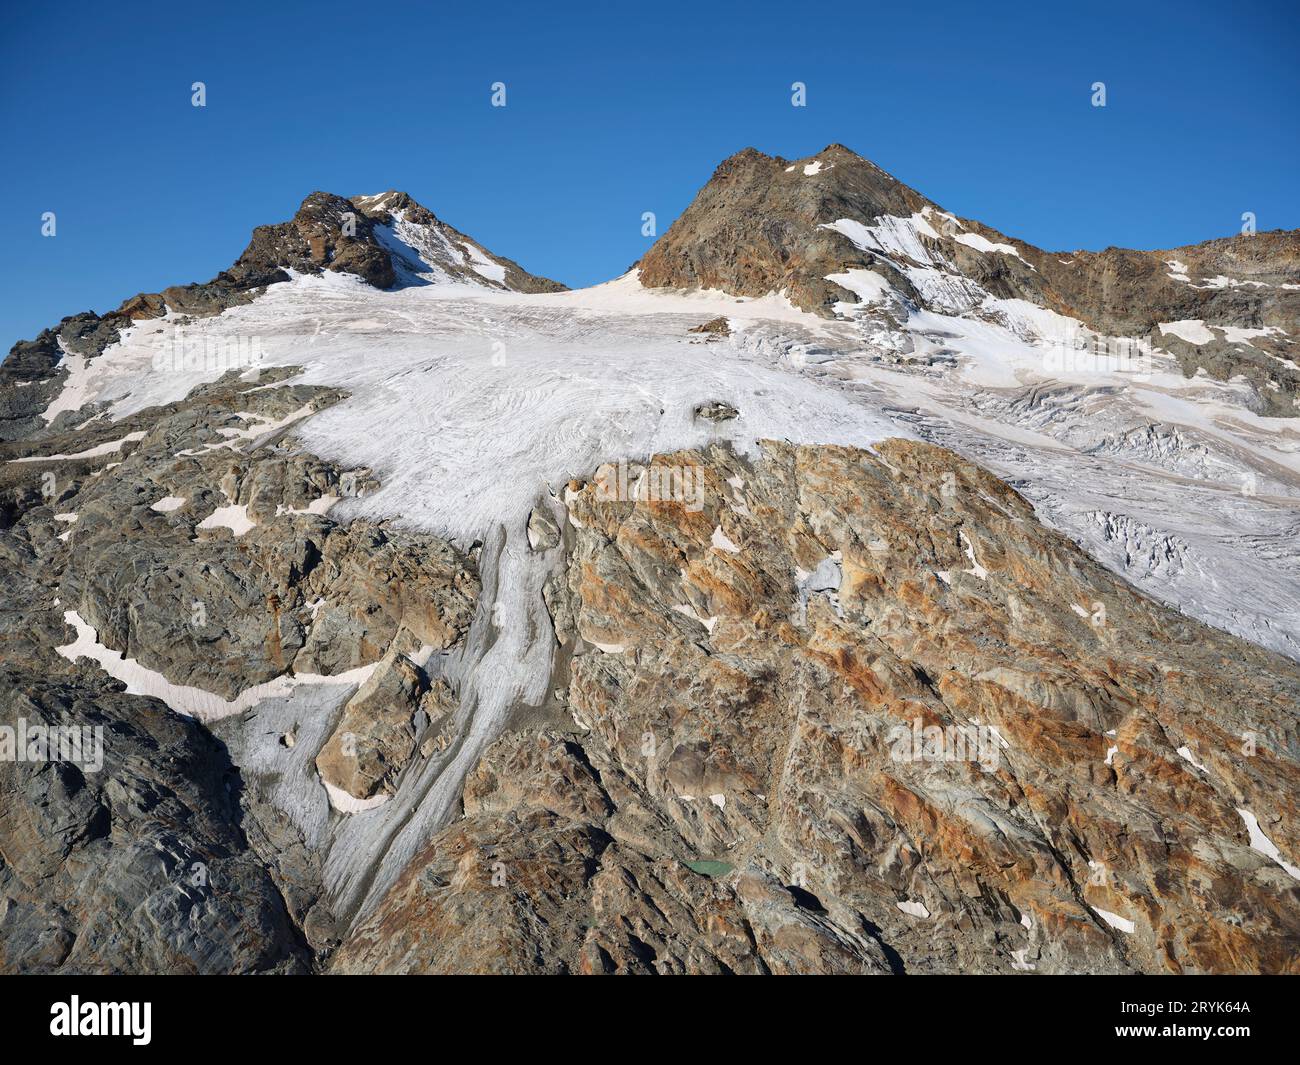 VUE AÉRIENNE. Le Mont Château blanc et son Glacier. La Thuile, Val Grisenche, Vallée d'Aoste, Italie. Banque D'Images